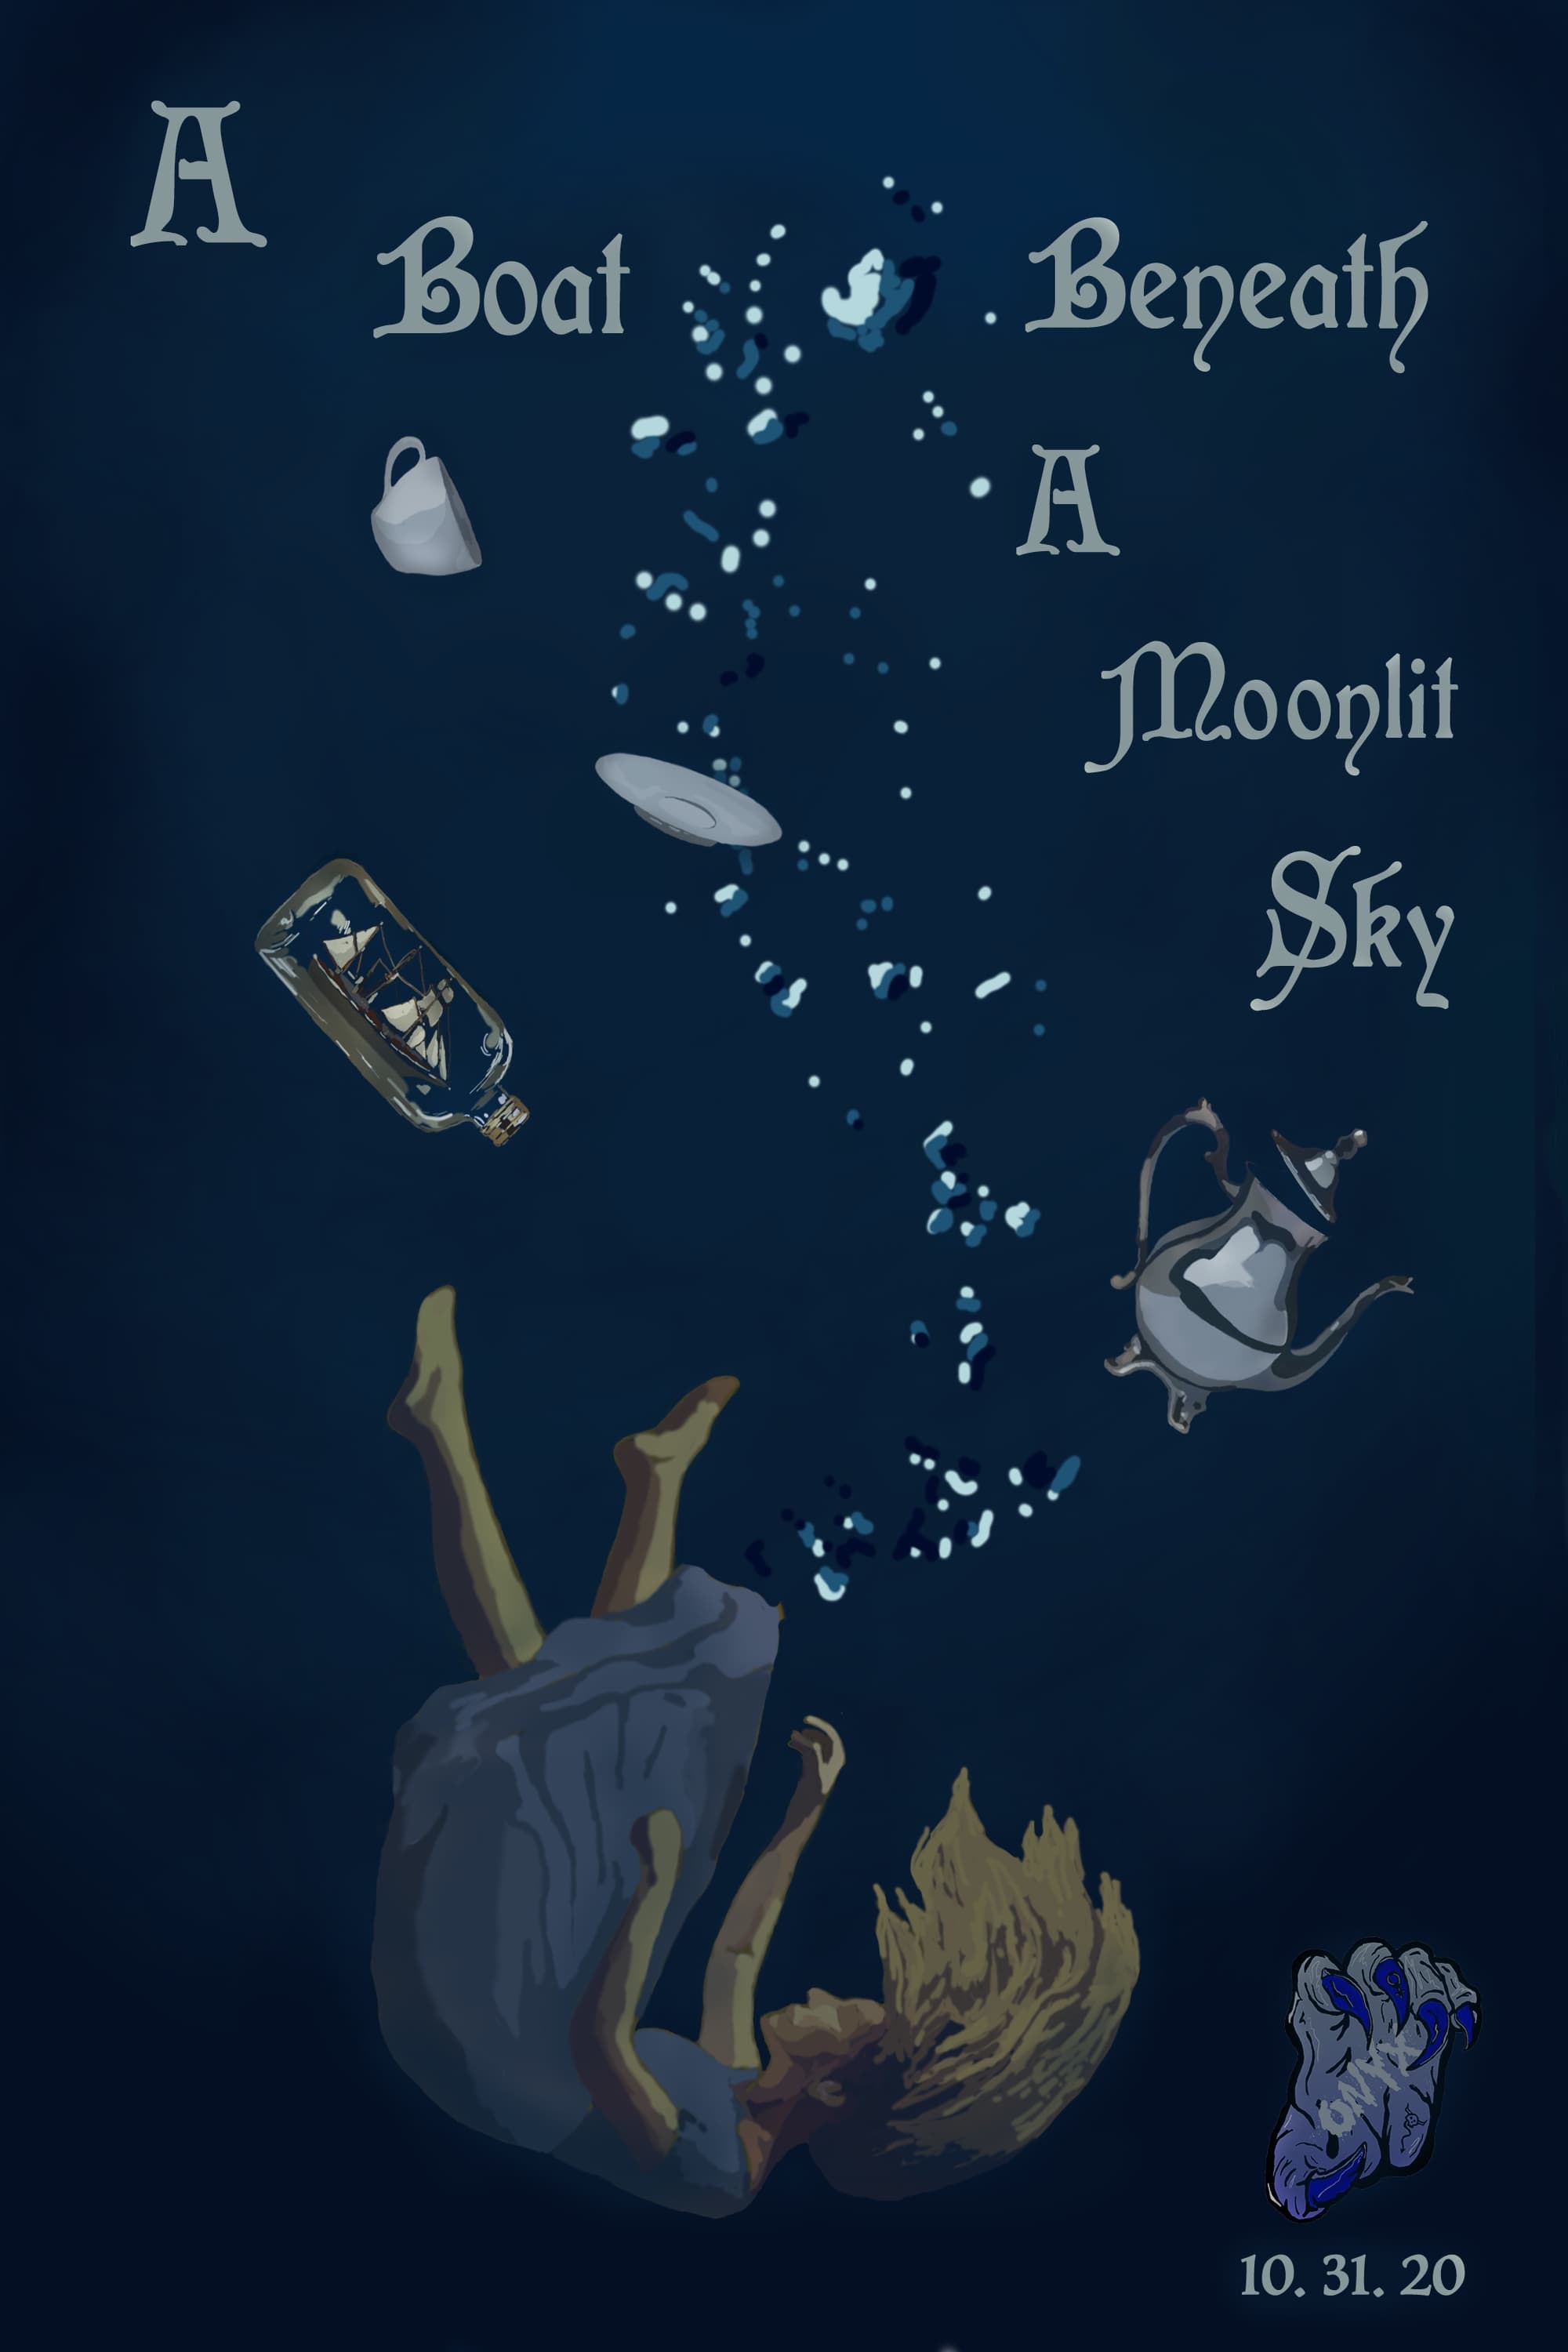 A Boat, Beneath A Moonlit Sky